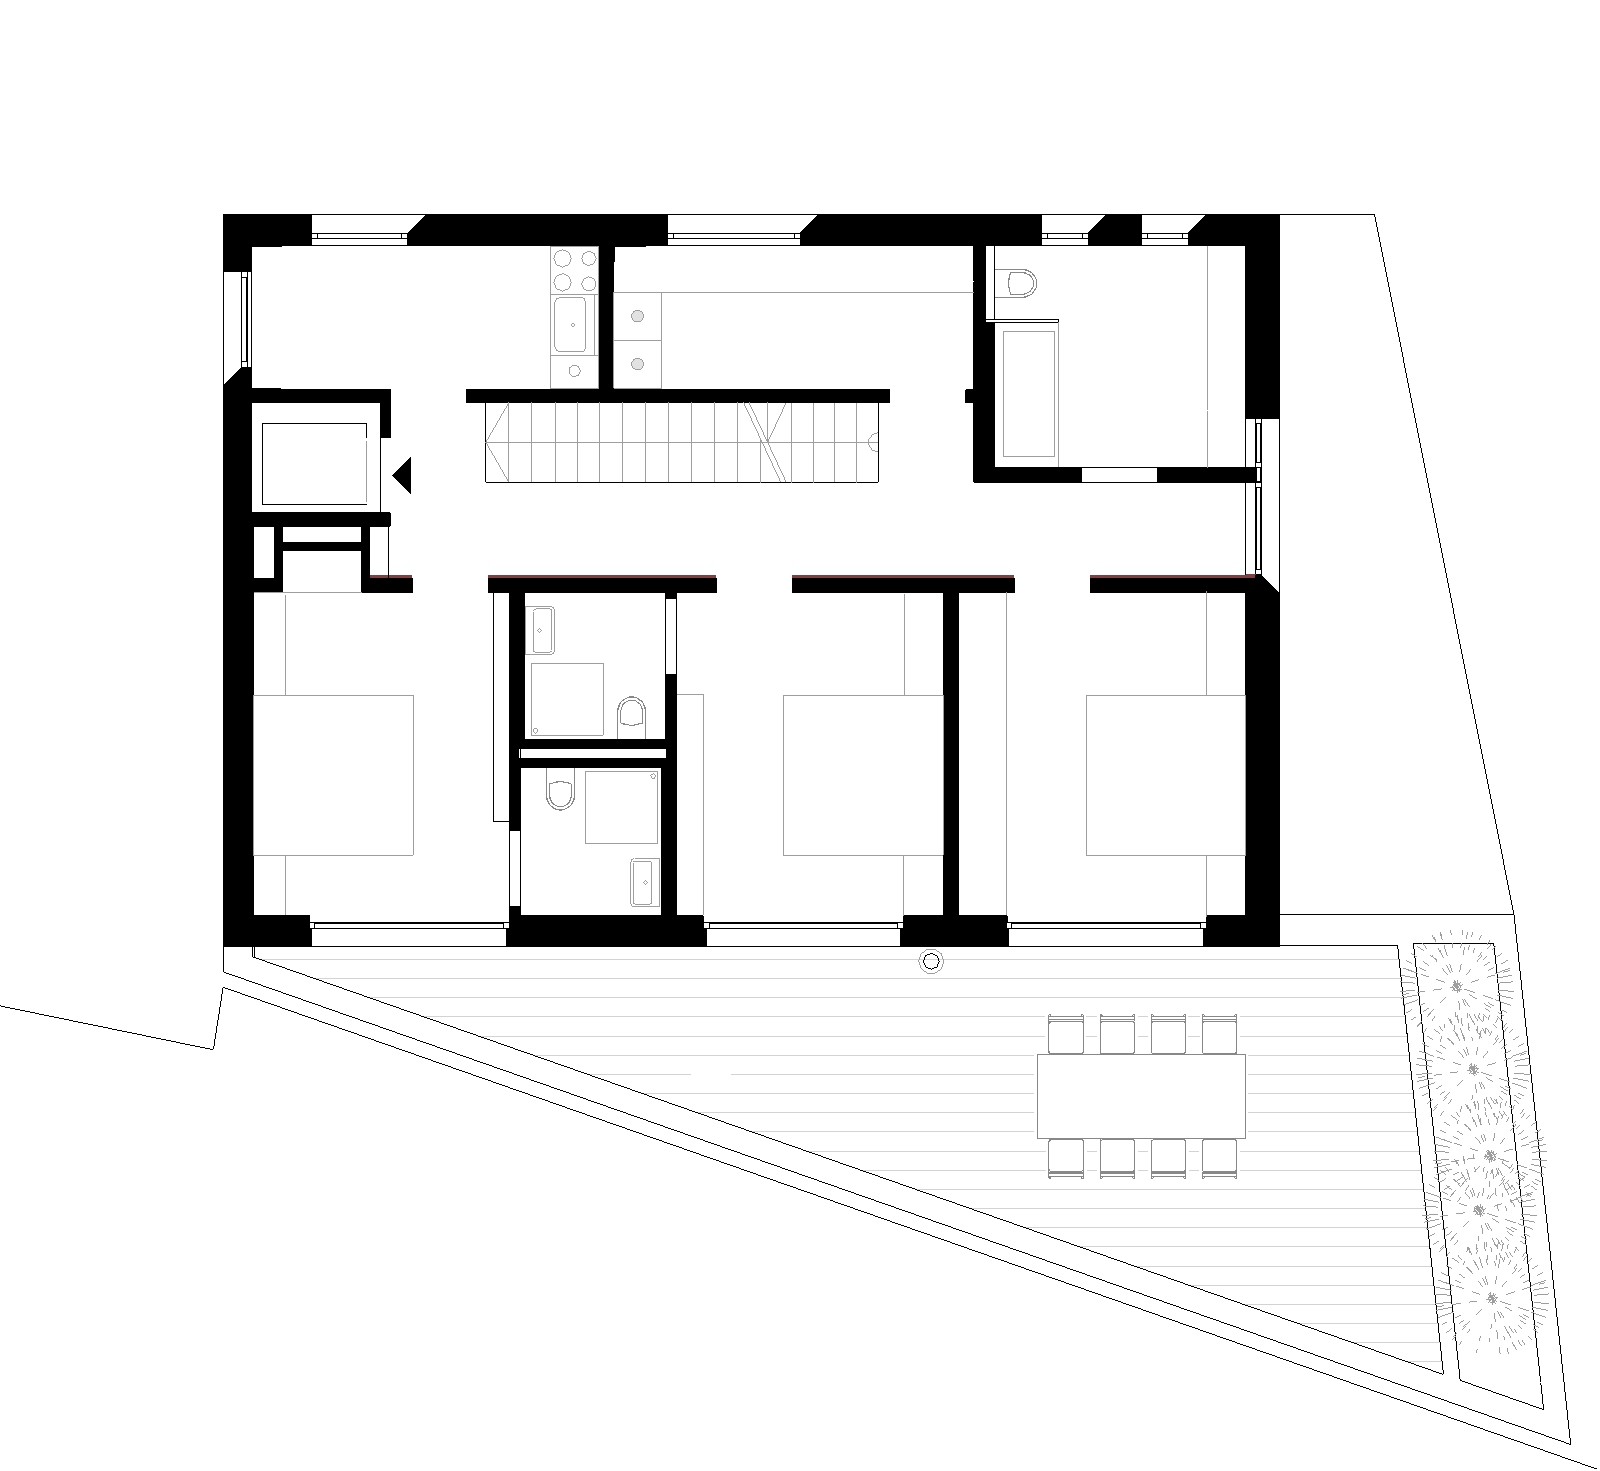 bhe-architektur-Wohnhaus-HS19_19